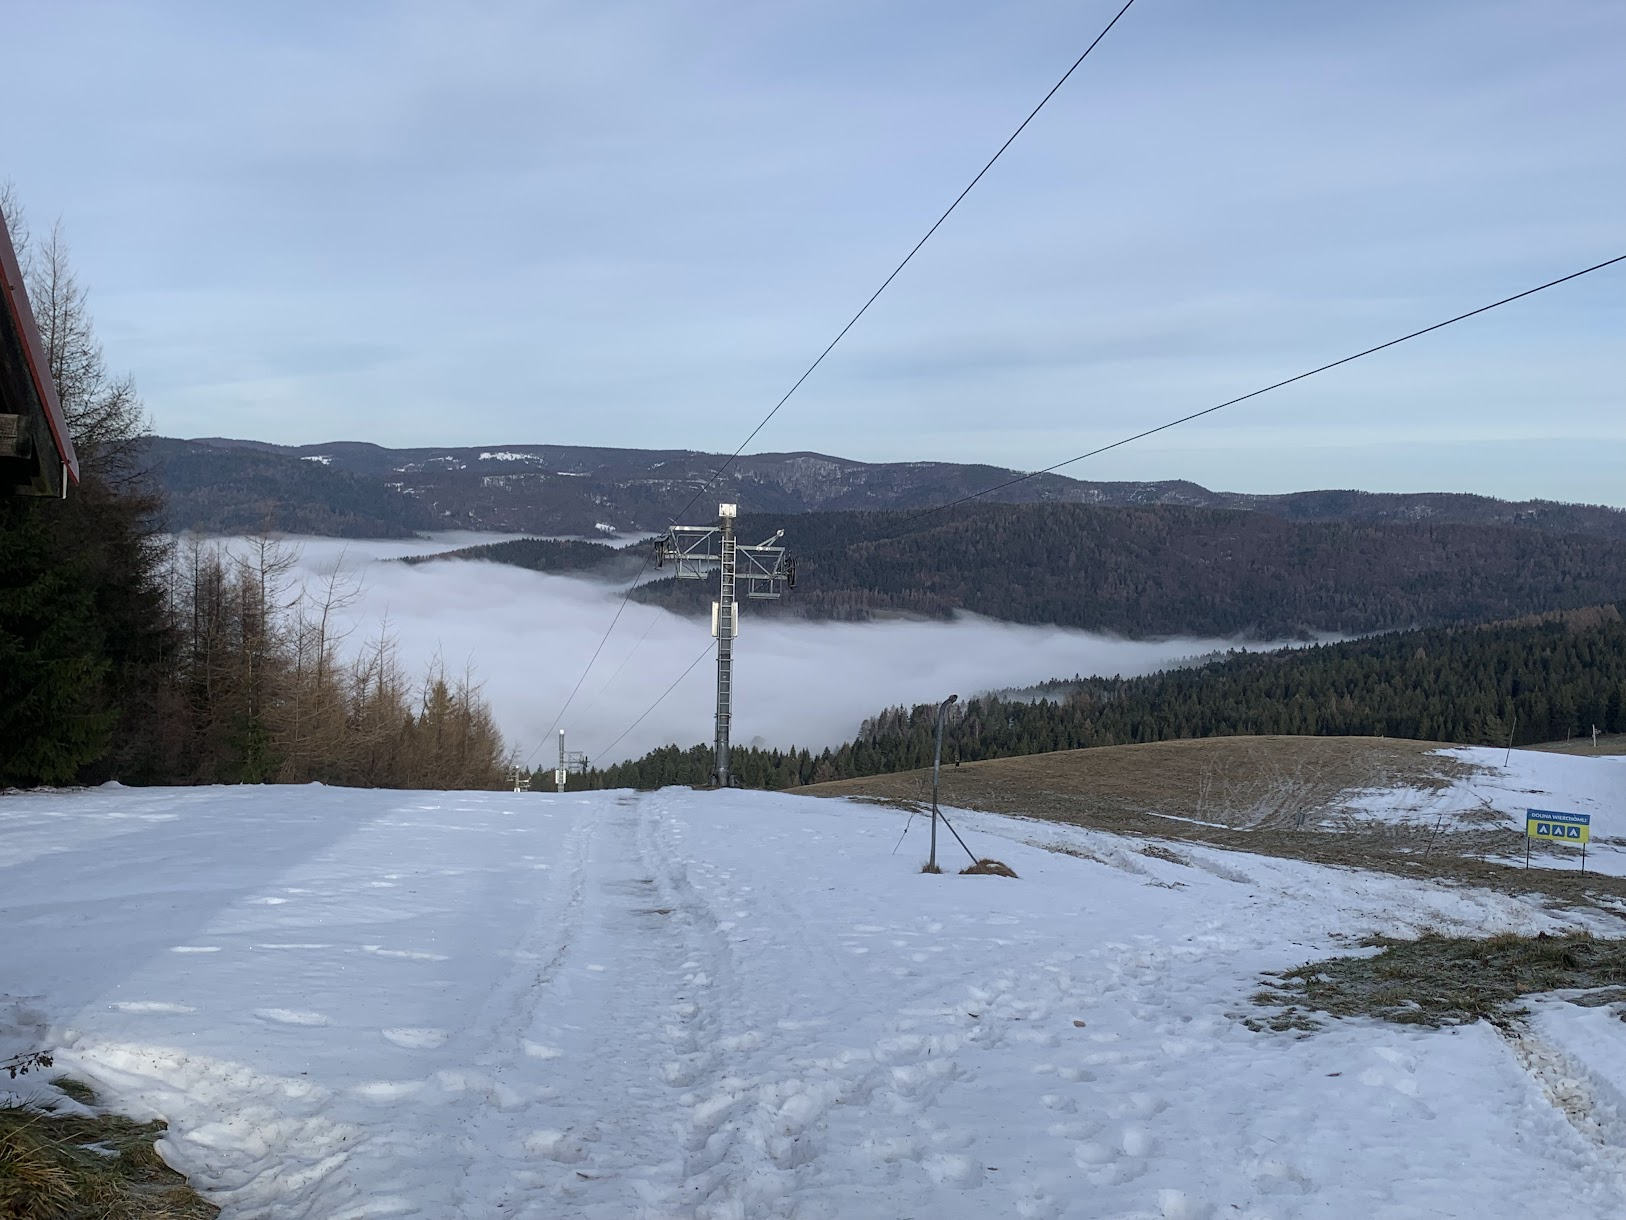 Stok narciarski na Jaworzynce od strony Wierchomli Małe. Na dalszym planie grzbiet z Czarcim Wierchem i Halą Łabowską.